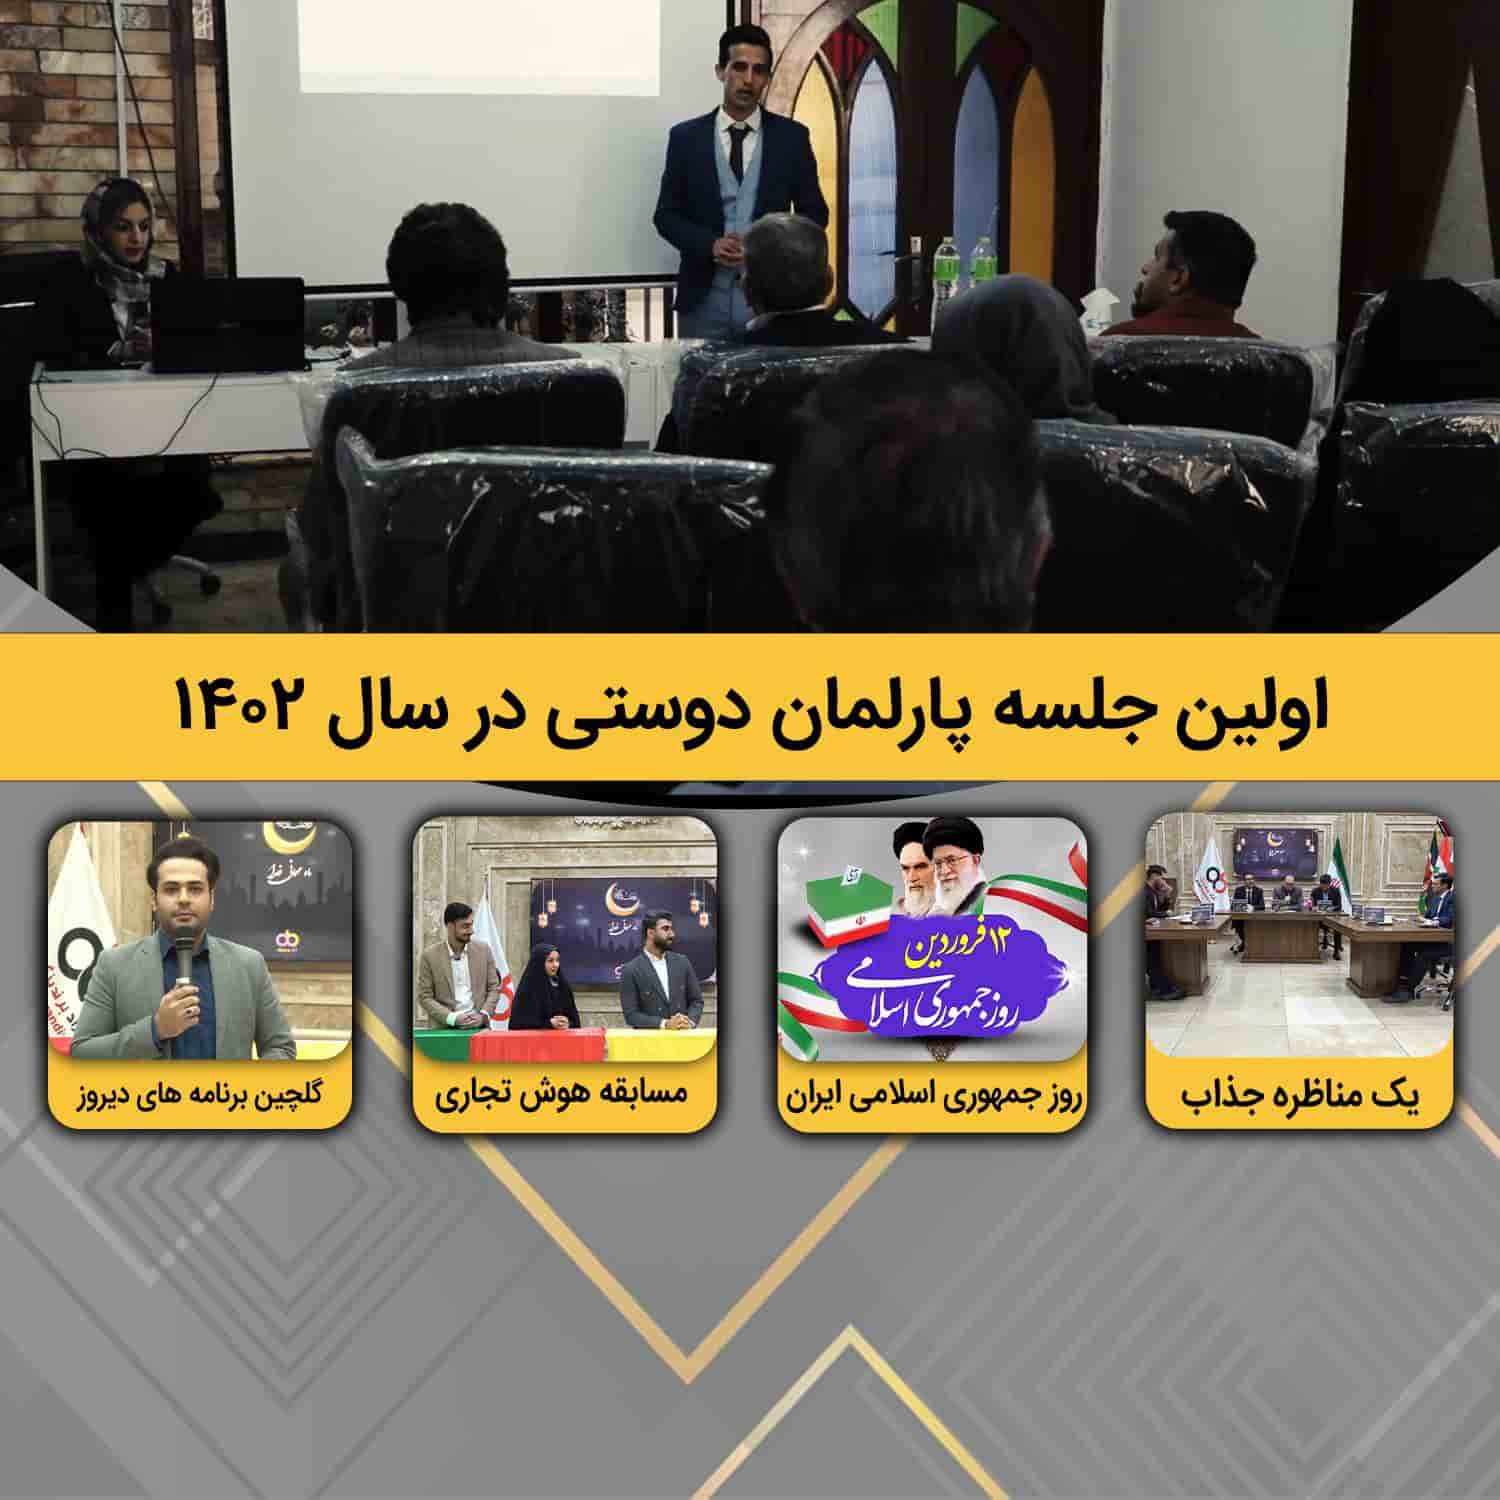 روز جمهوری اسلامی ایران مبارک + اولین جلسه پارلمان دوستی در ۱۴۰۲ + مسابقه هوش تجاری